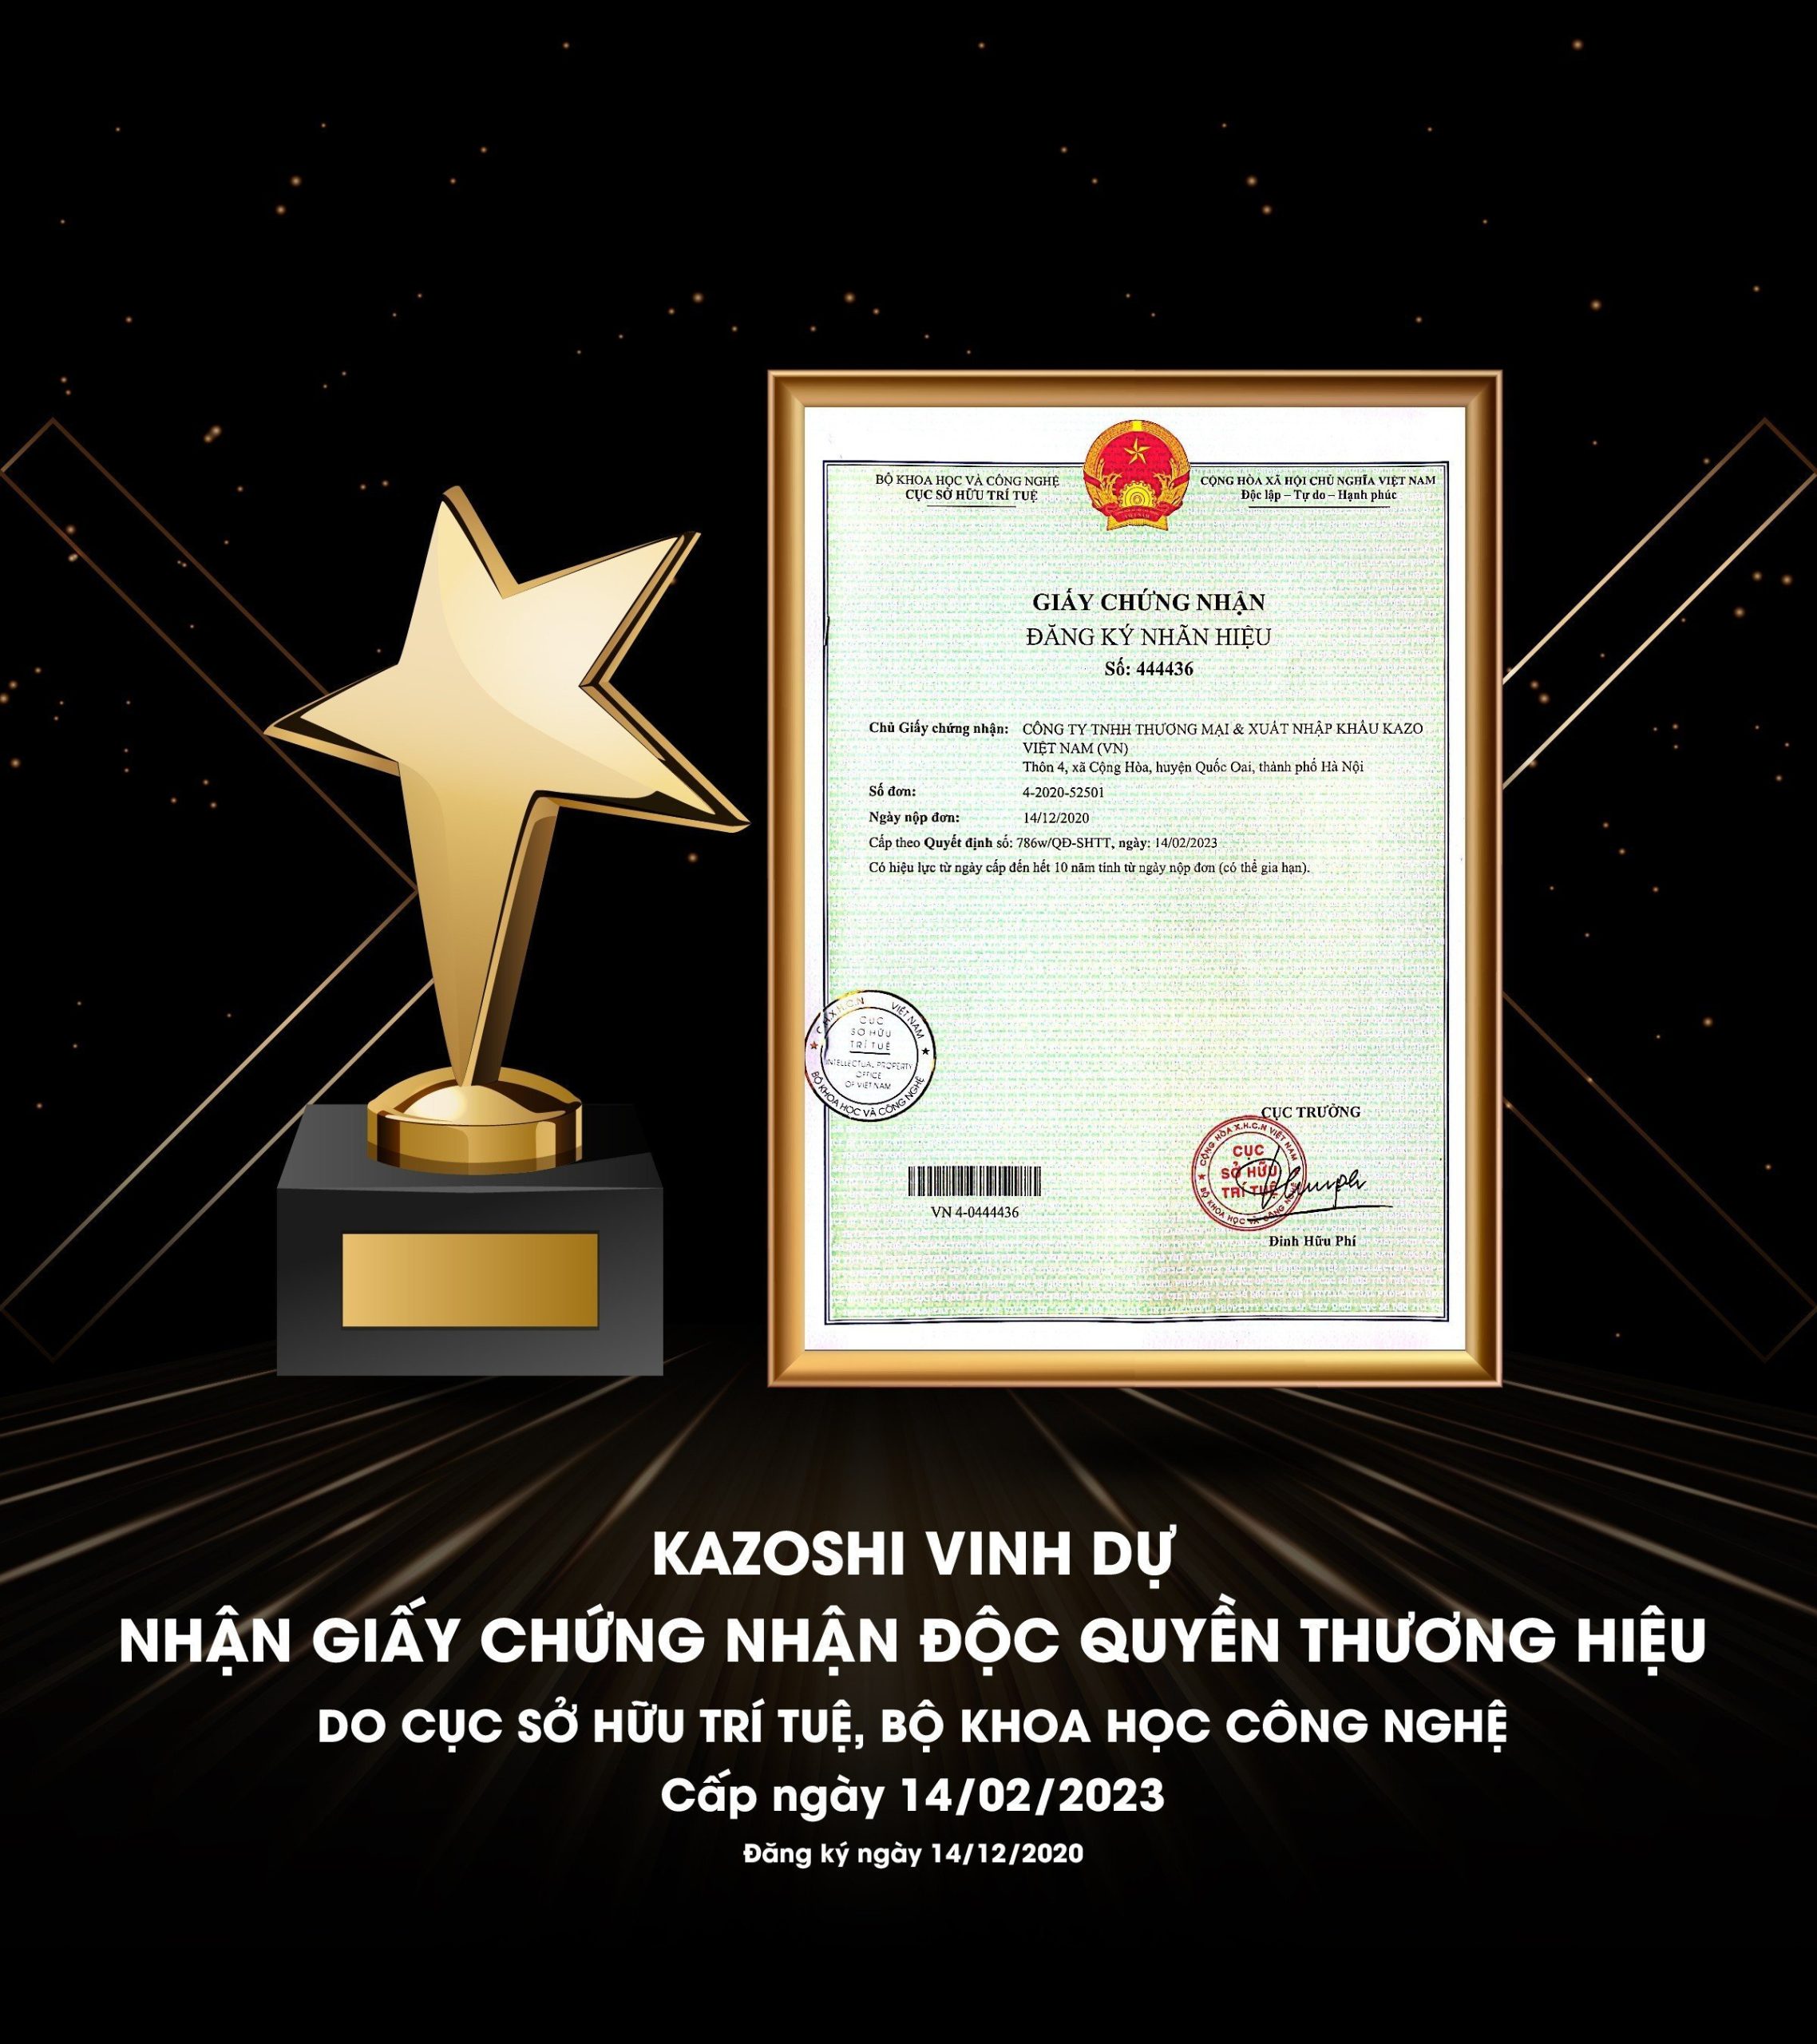 Kazoshi Việt Nam vinh dự được nhận giấy chứng nhận độc quyền thương hiệu